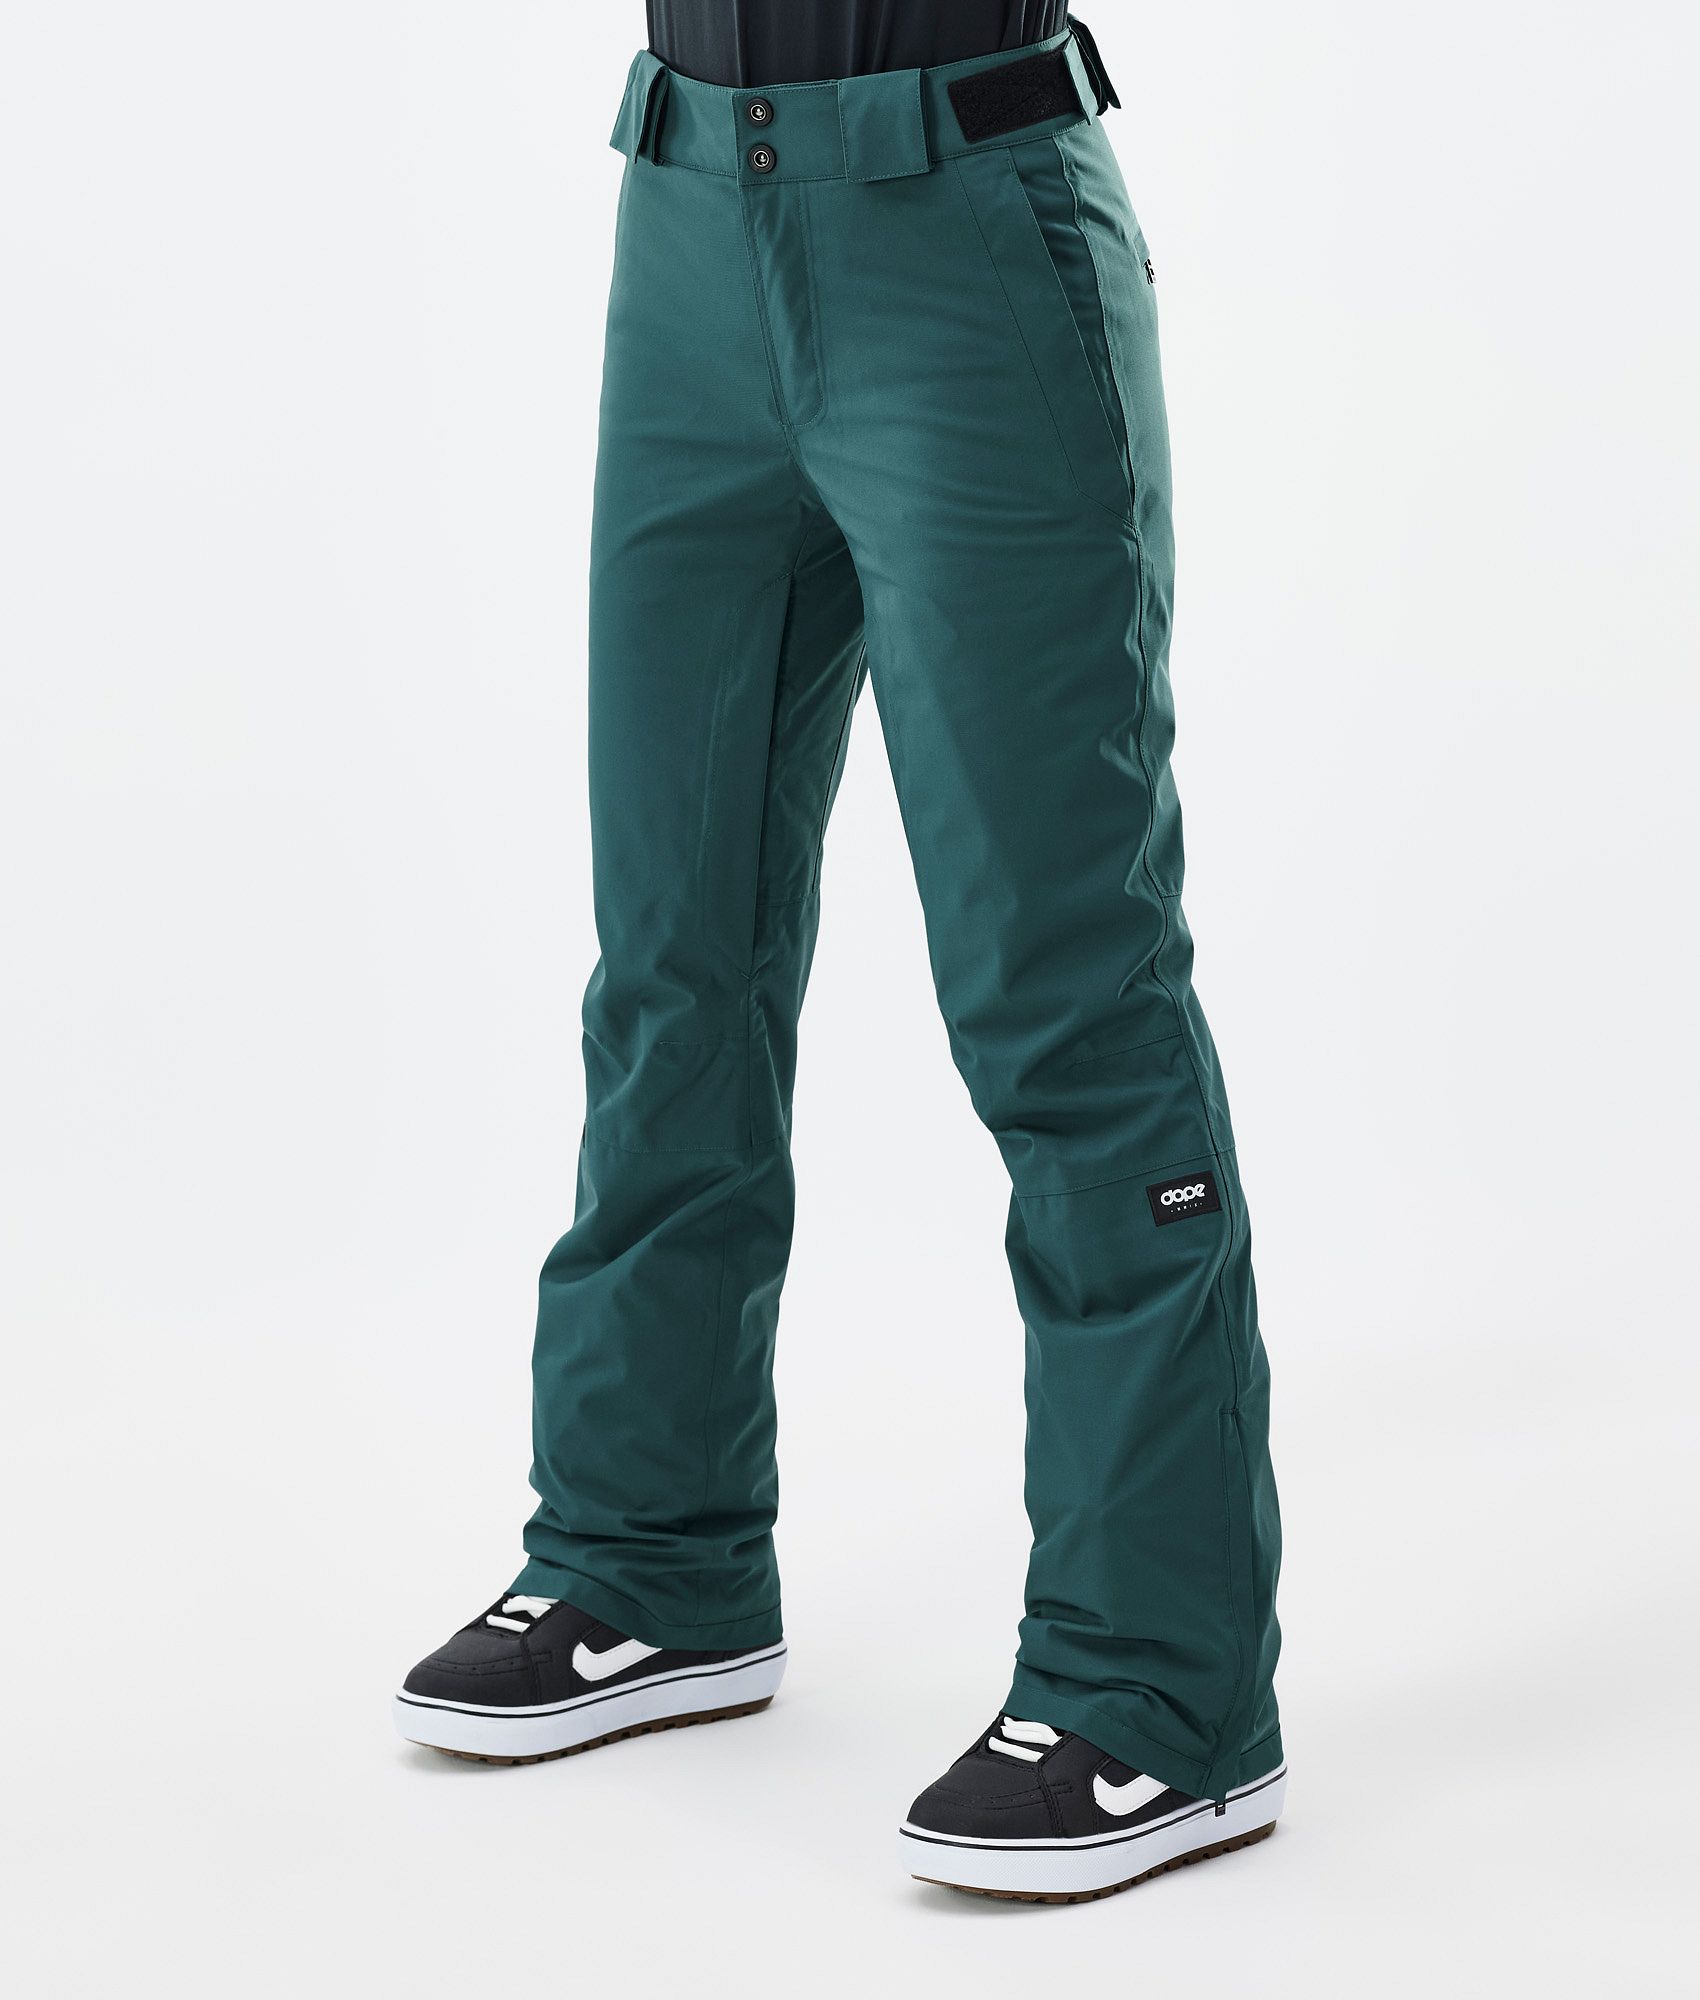 Boy's bottle green cargo pants : buy online - Trousers, Jeans | DPAM  International Website